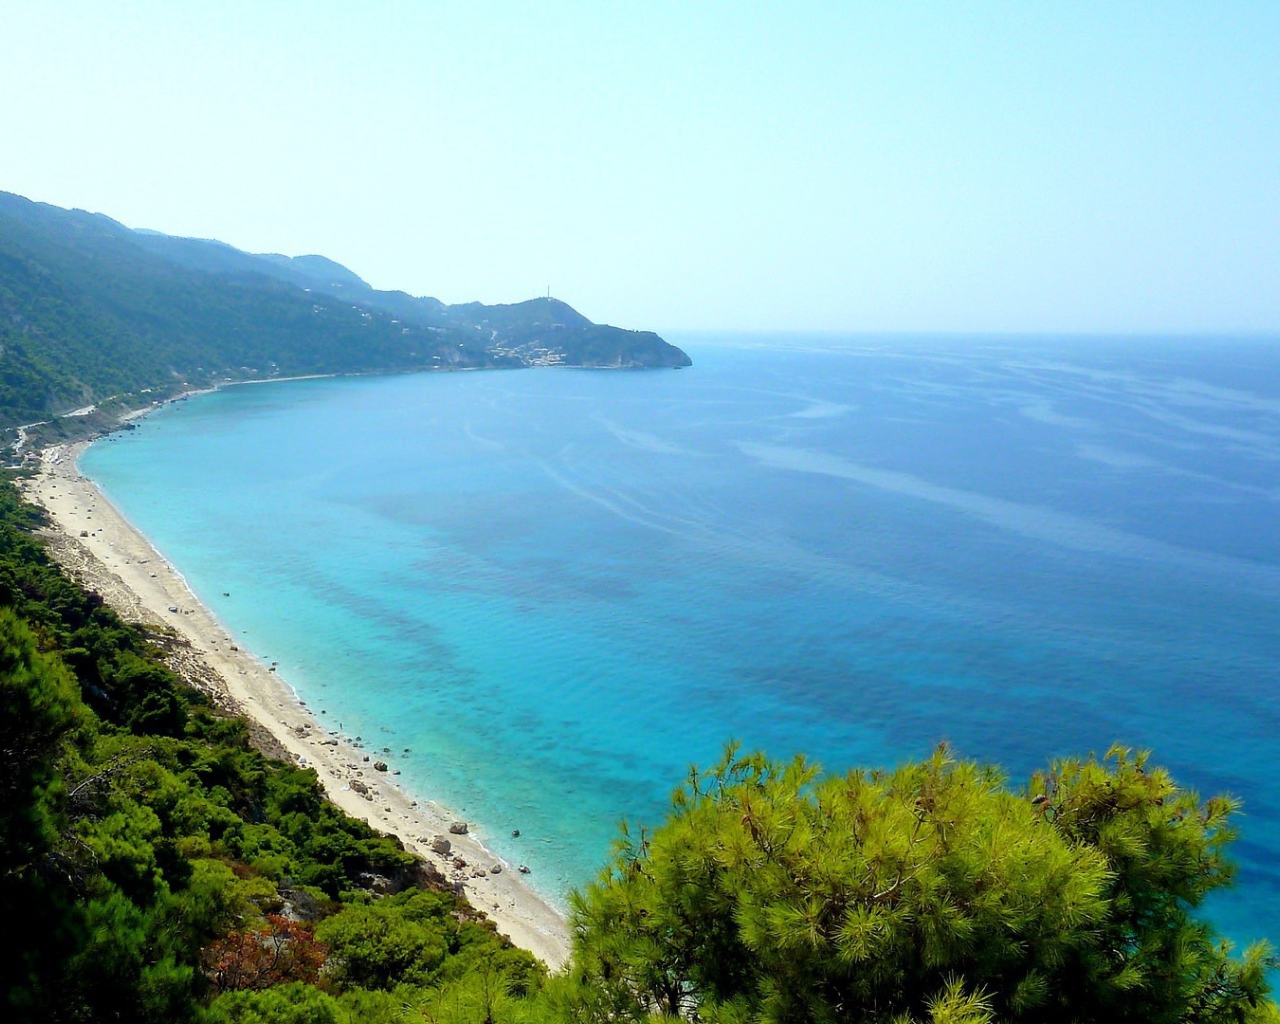 Azure sea off the coast of Lefkada, Greece